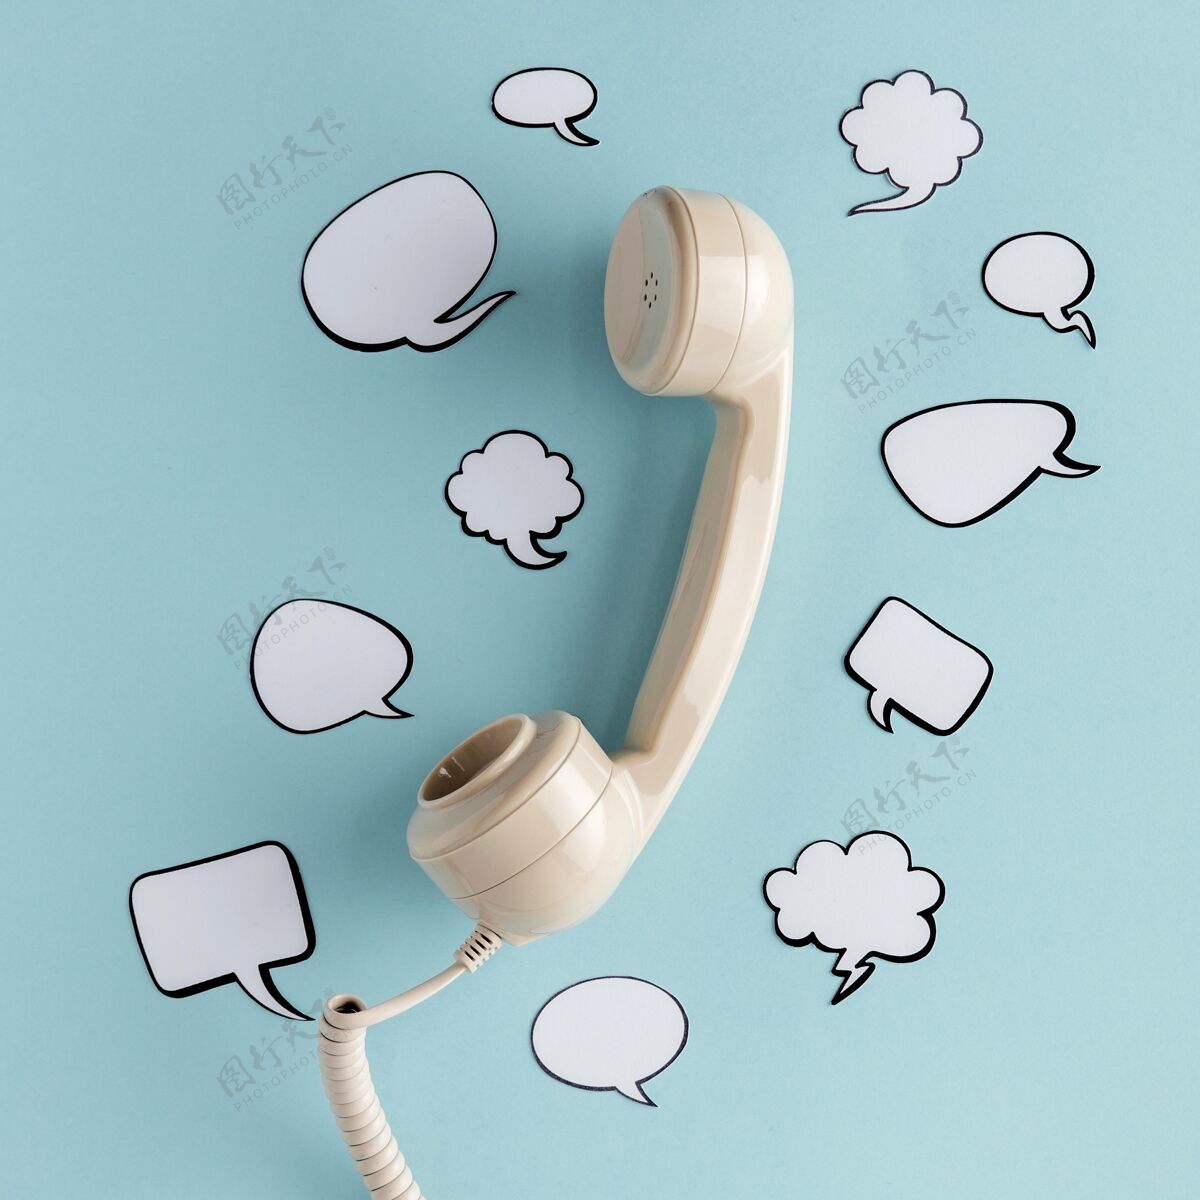 接收器平放的聊天泡泡与电话接收器聊天传达社交